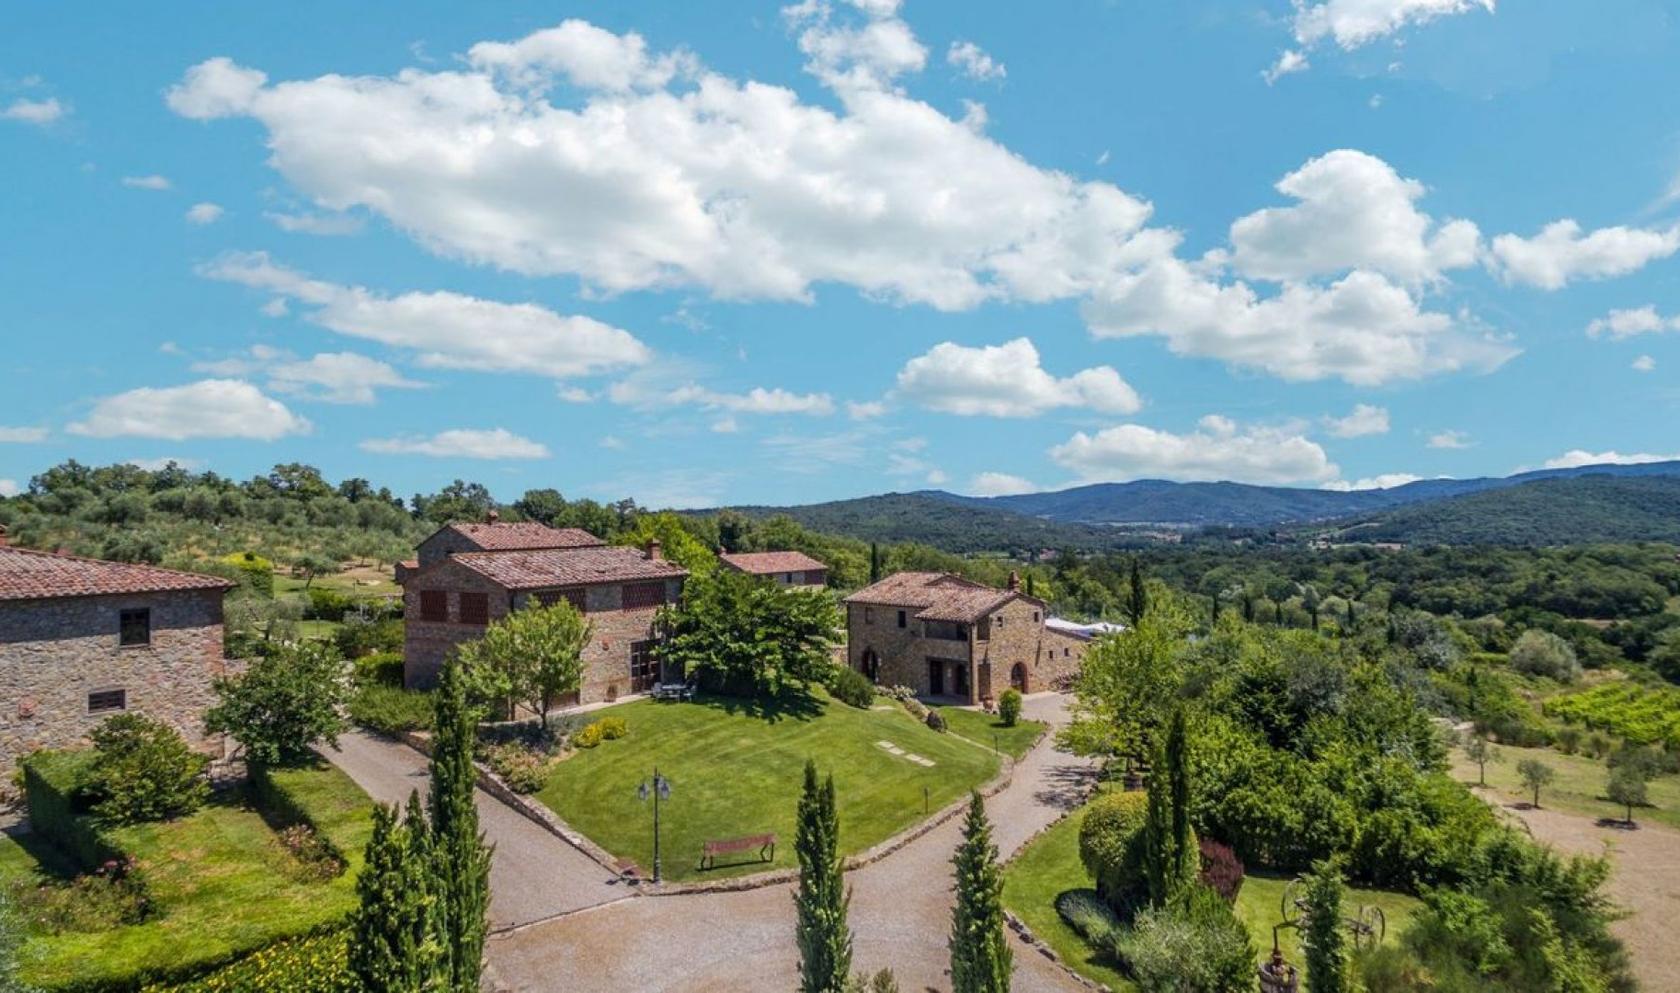 Toscana Immobiliare - prestigious holiday farm in Tuscany